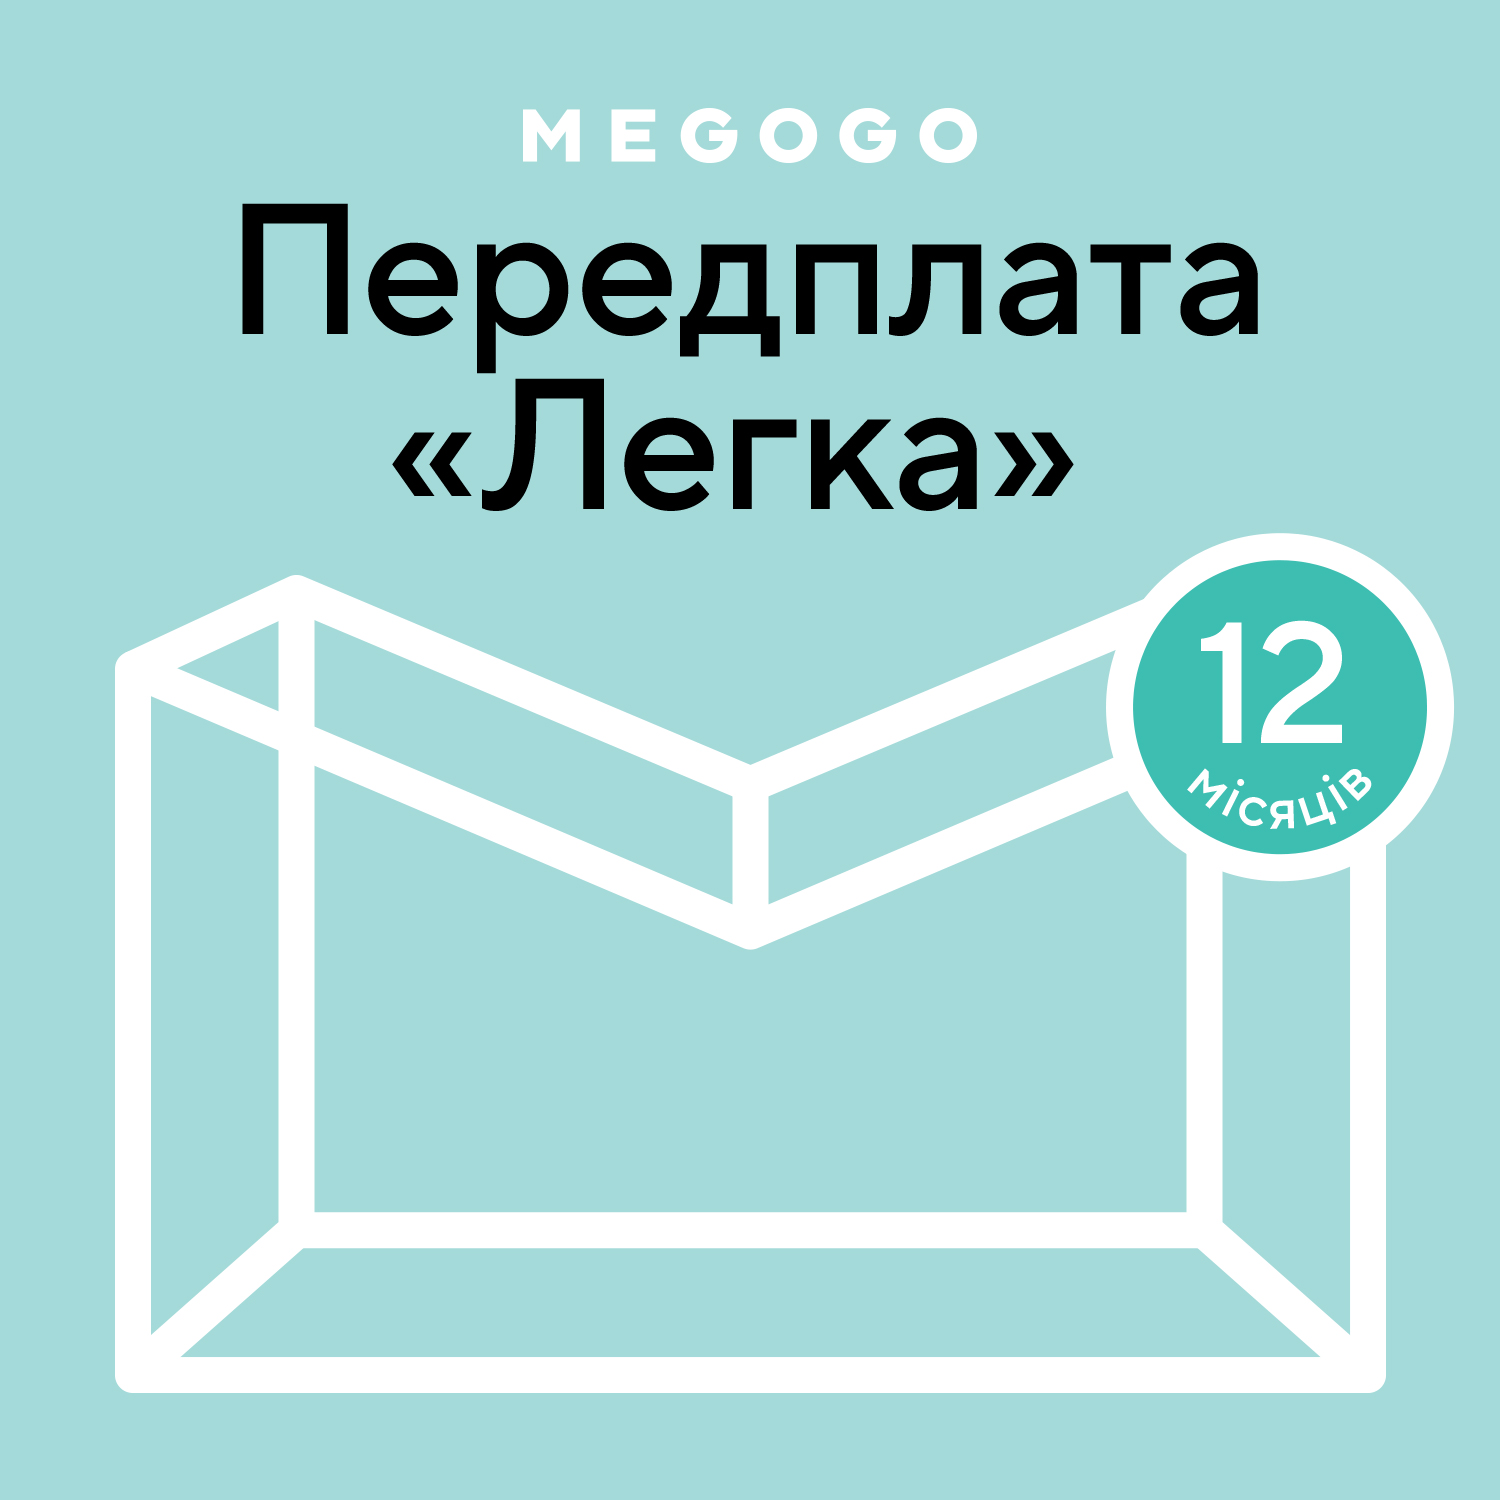 MEGOGO «Кино и ТВ: Легкая» 12 мес в Киеве